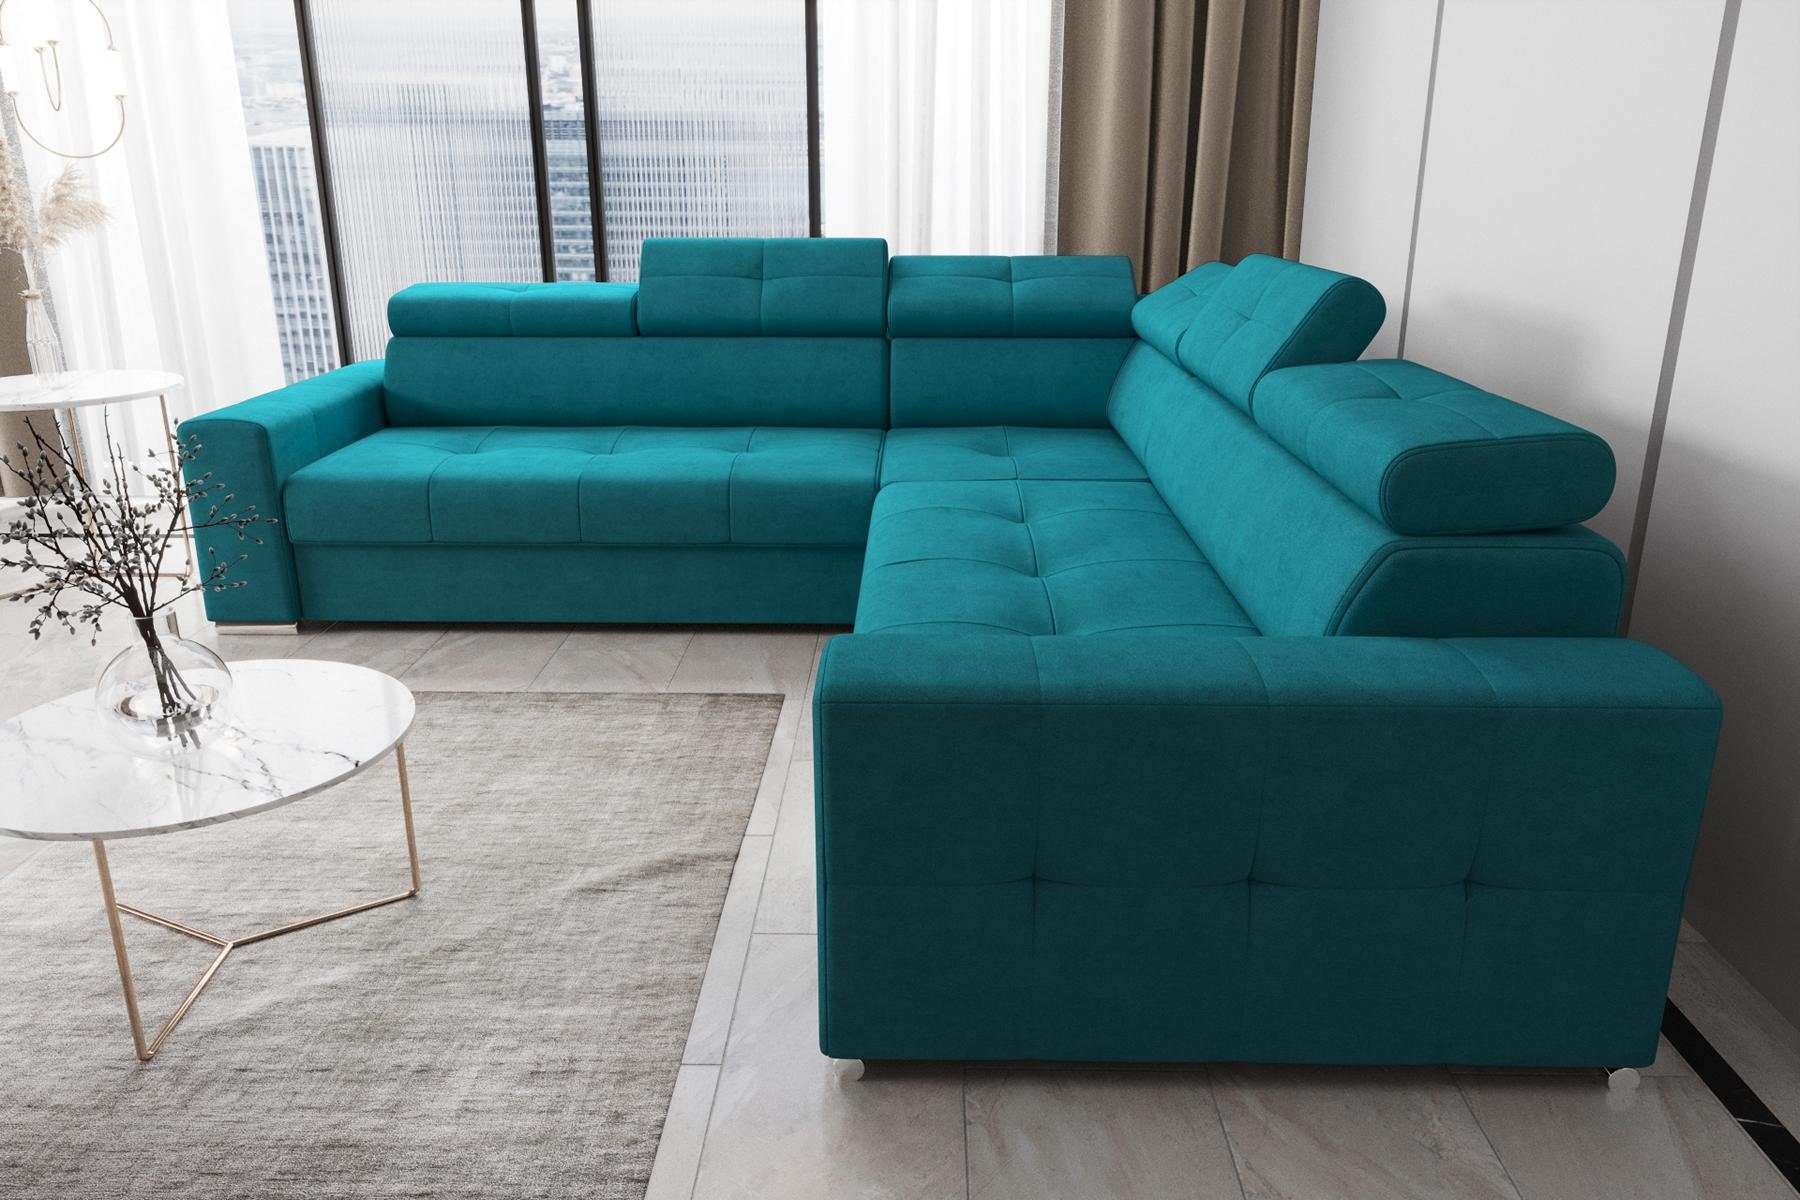 Form Modern Made JVmoebel Blau Ecksofa Ecksofa Textil Europe Wohnzimmer L Leder Couch, in Luxus